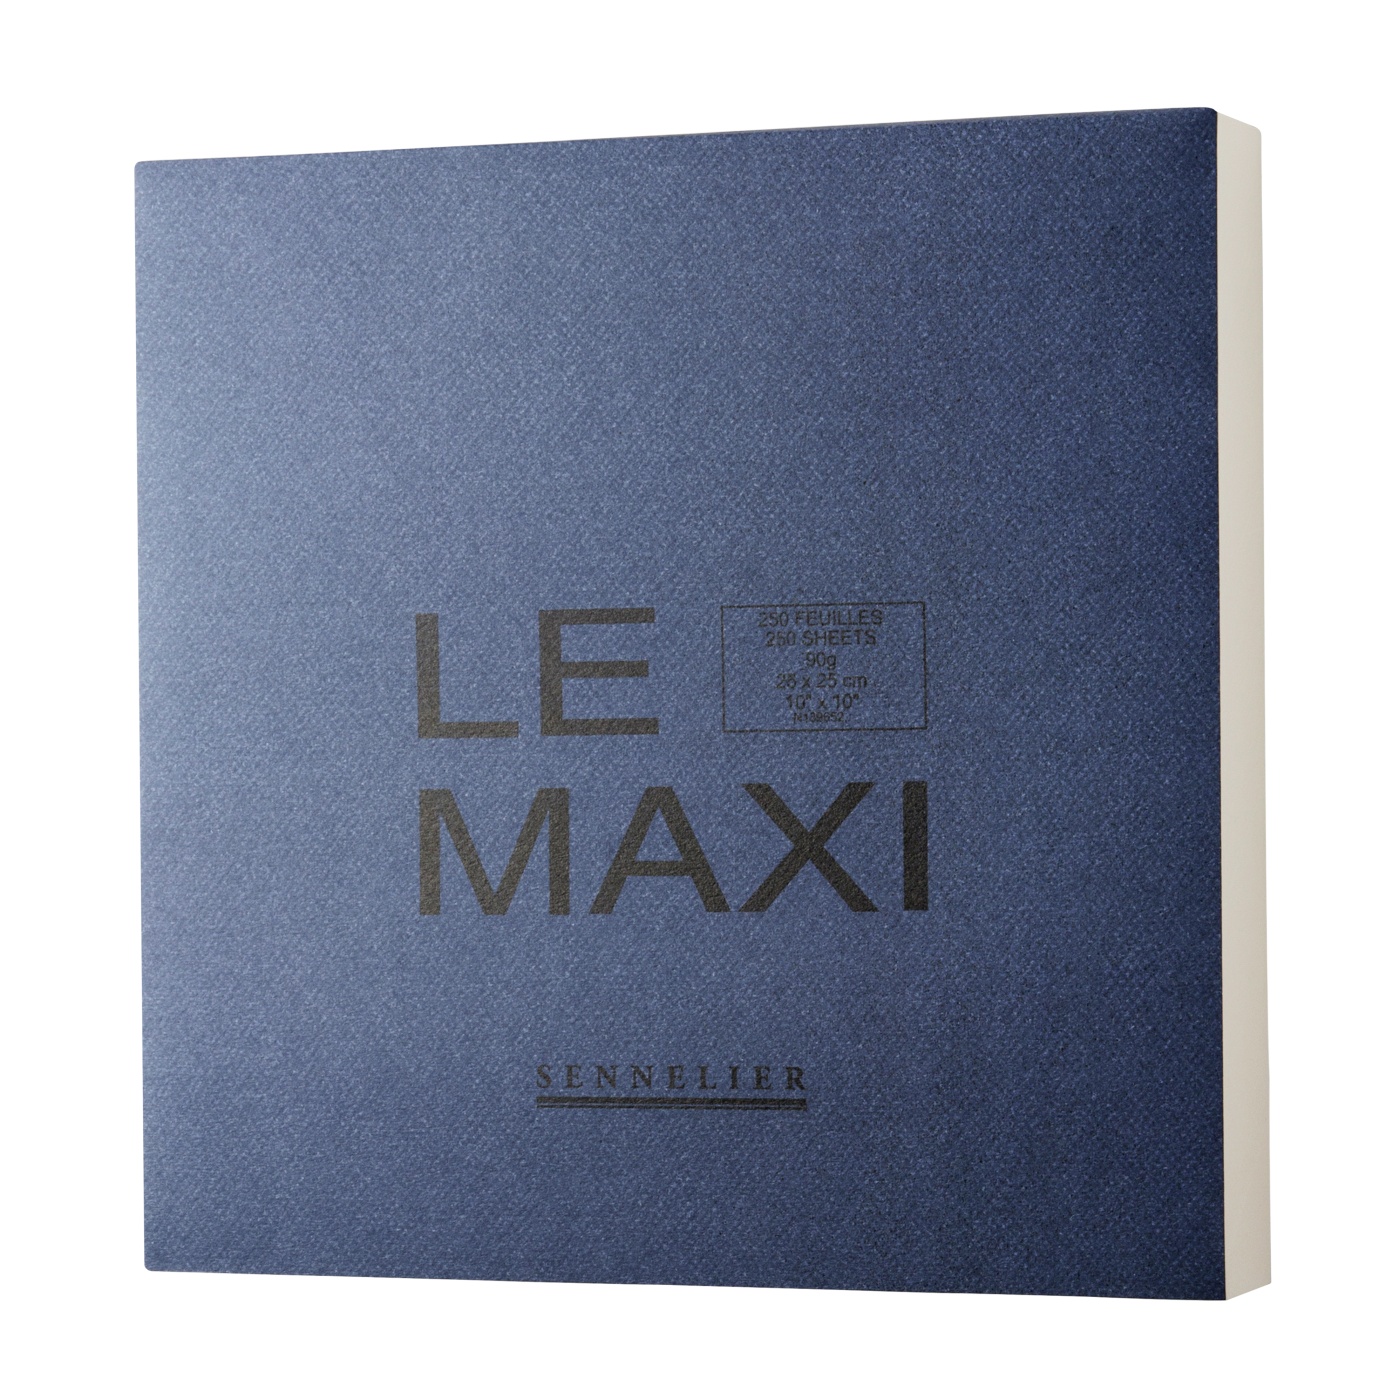 Sennelier Le Maxi Drawing Pad 25x25 cm